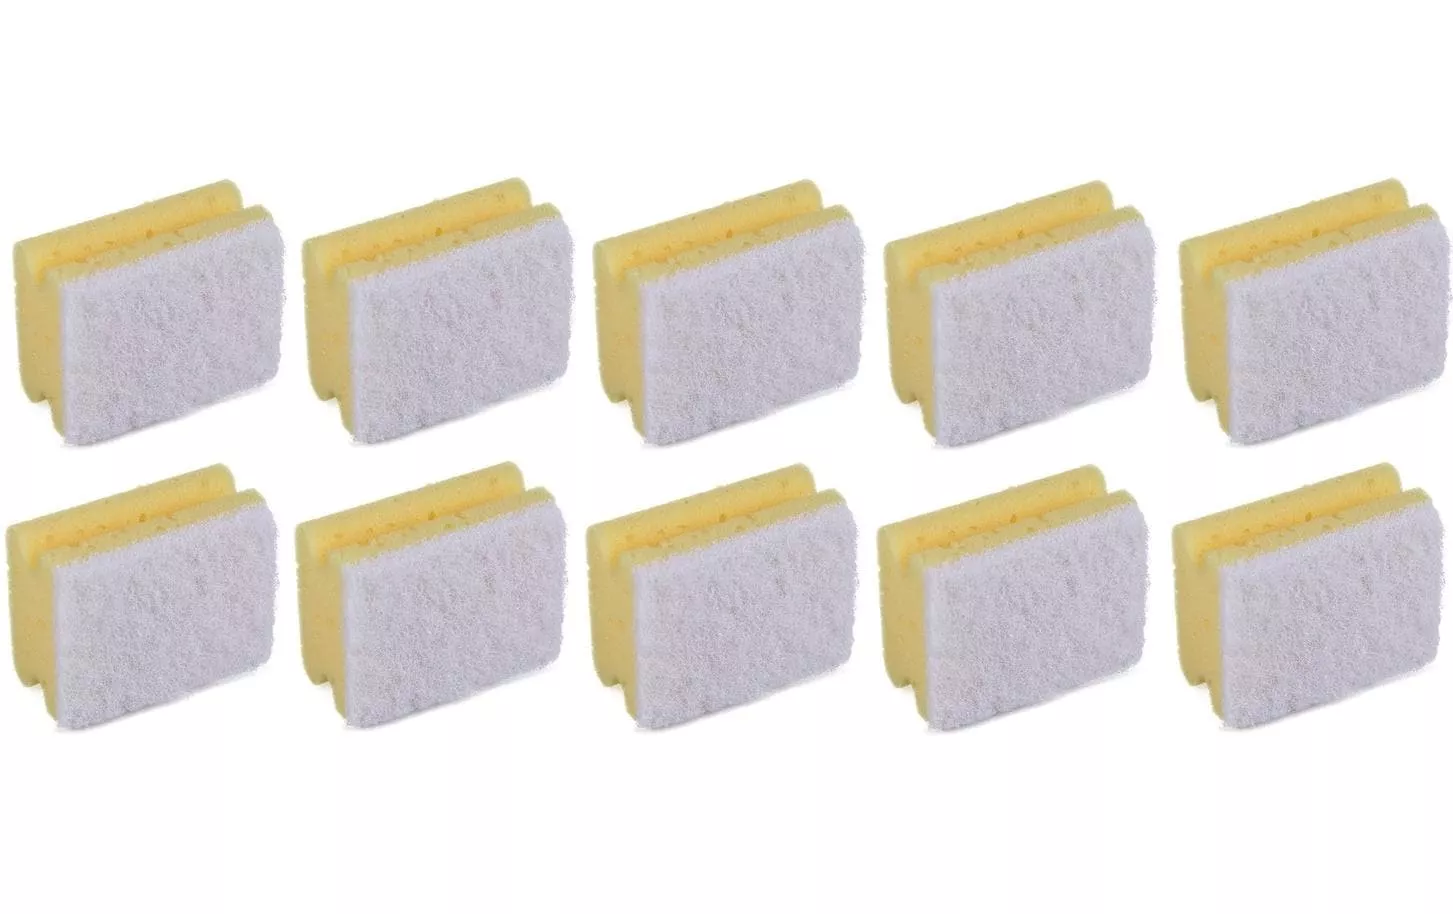 Sponge Professional 10 pezzi, giallo/bianco, piccolo